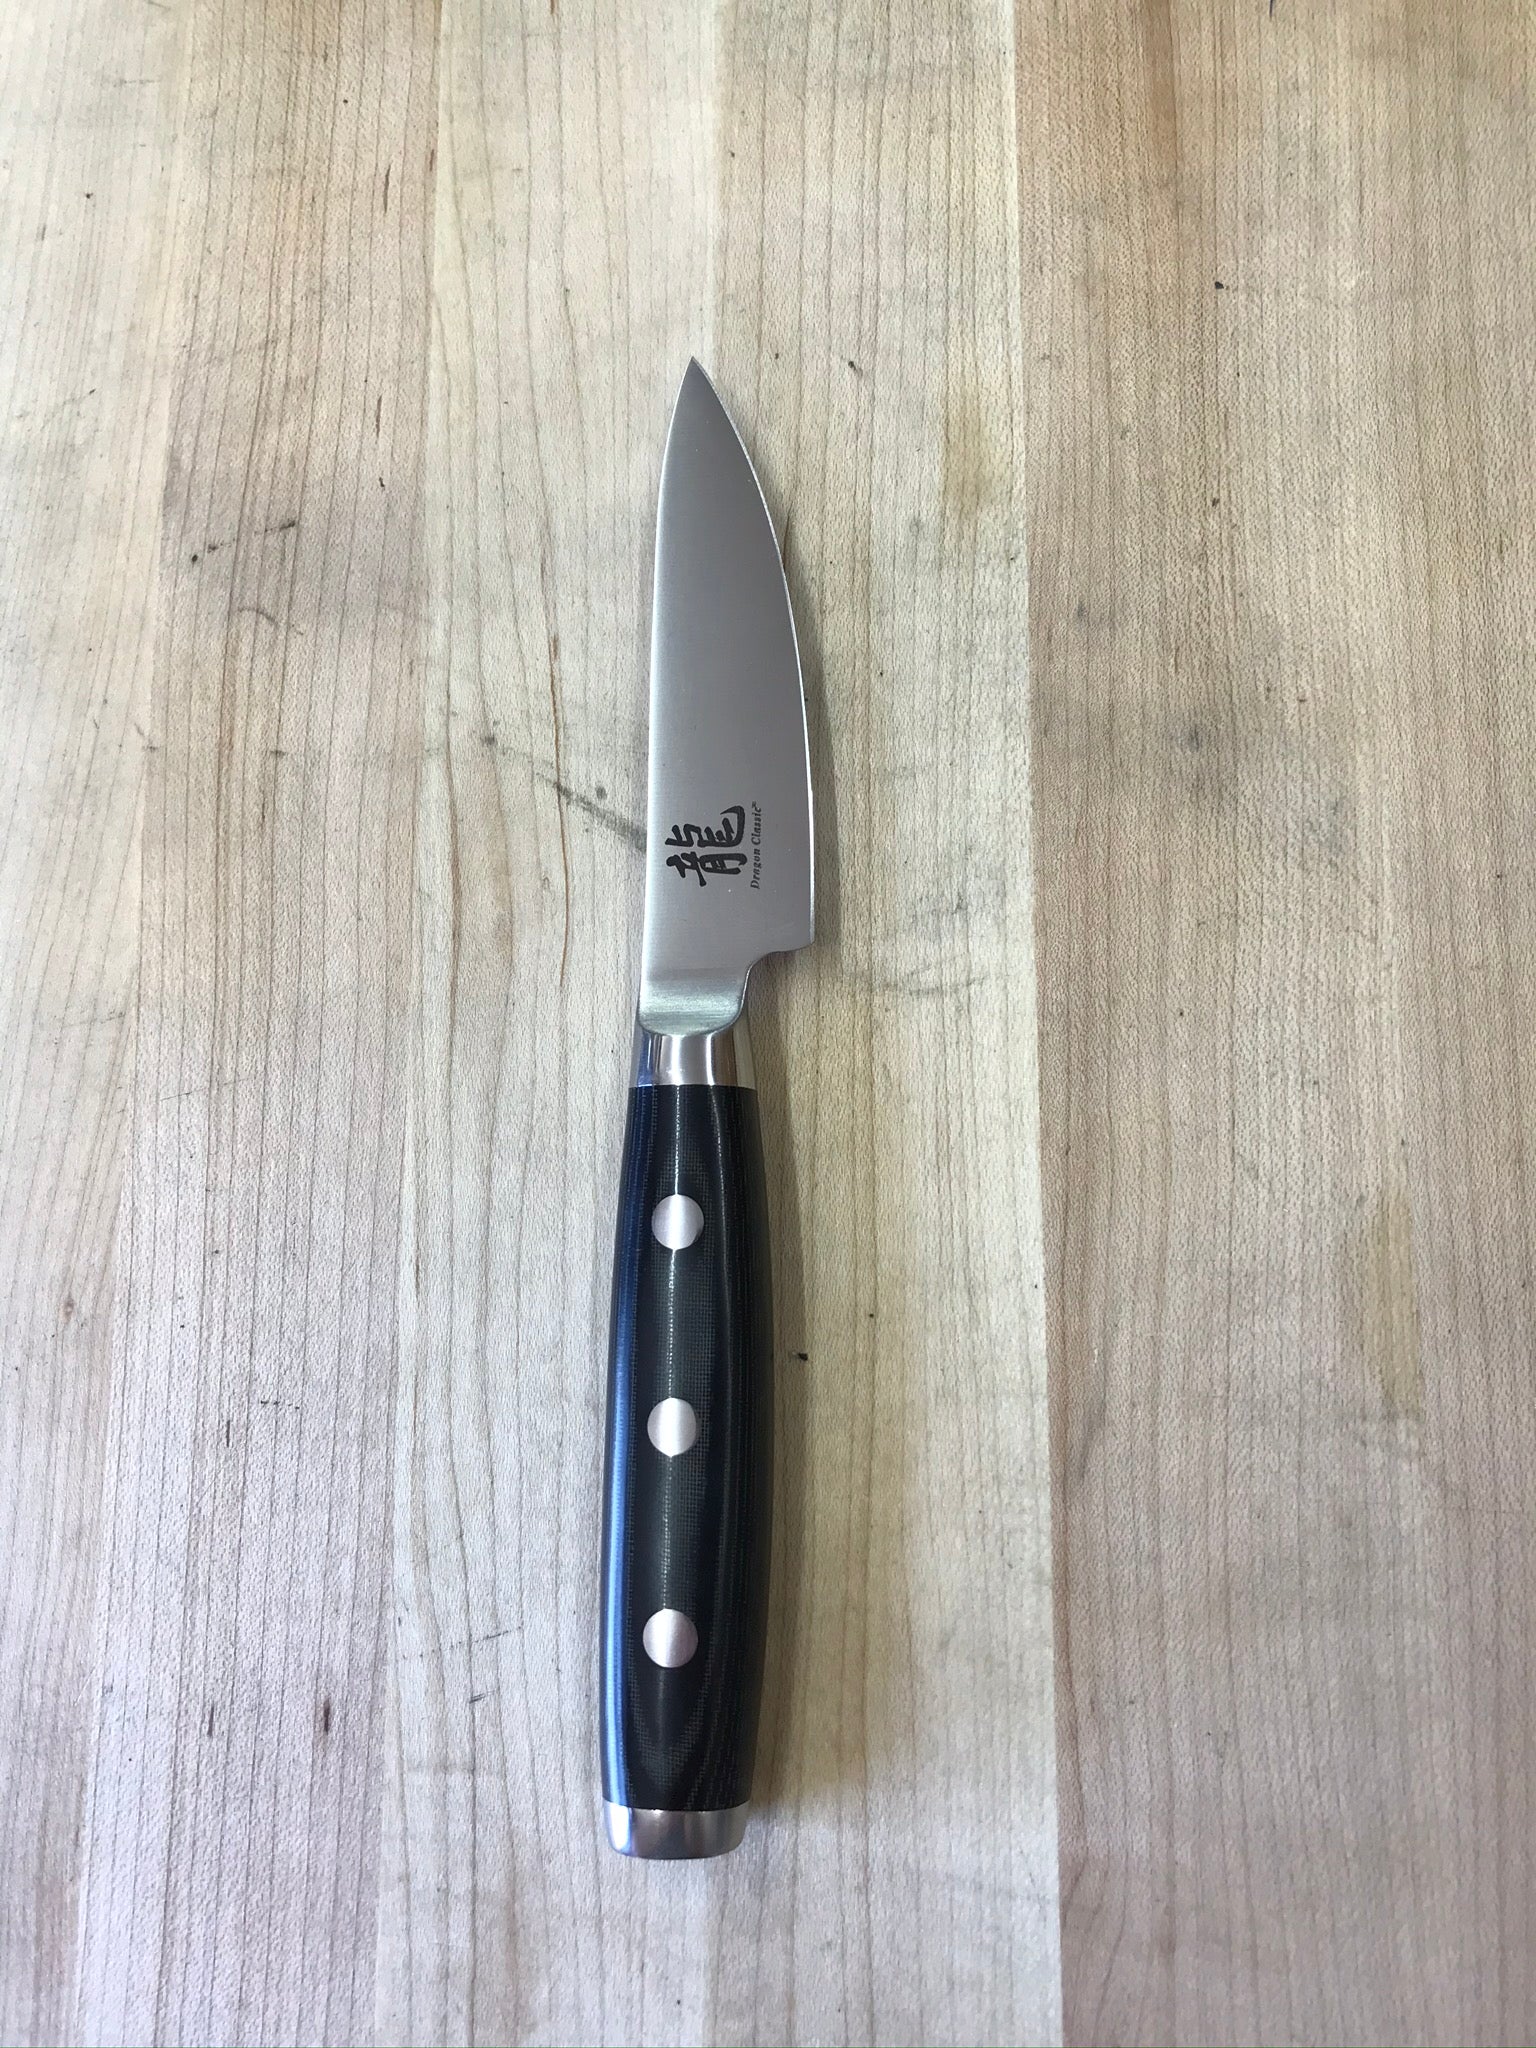 Messermeister Oliva Elite Paring Knife - 3.5